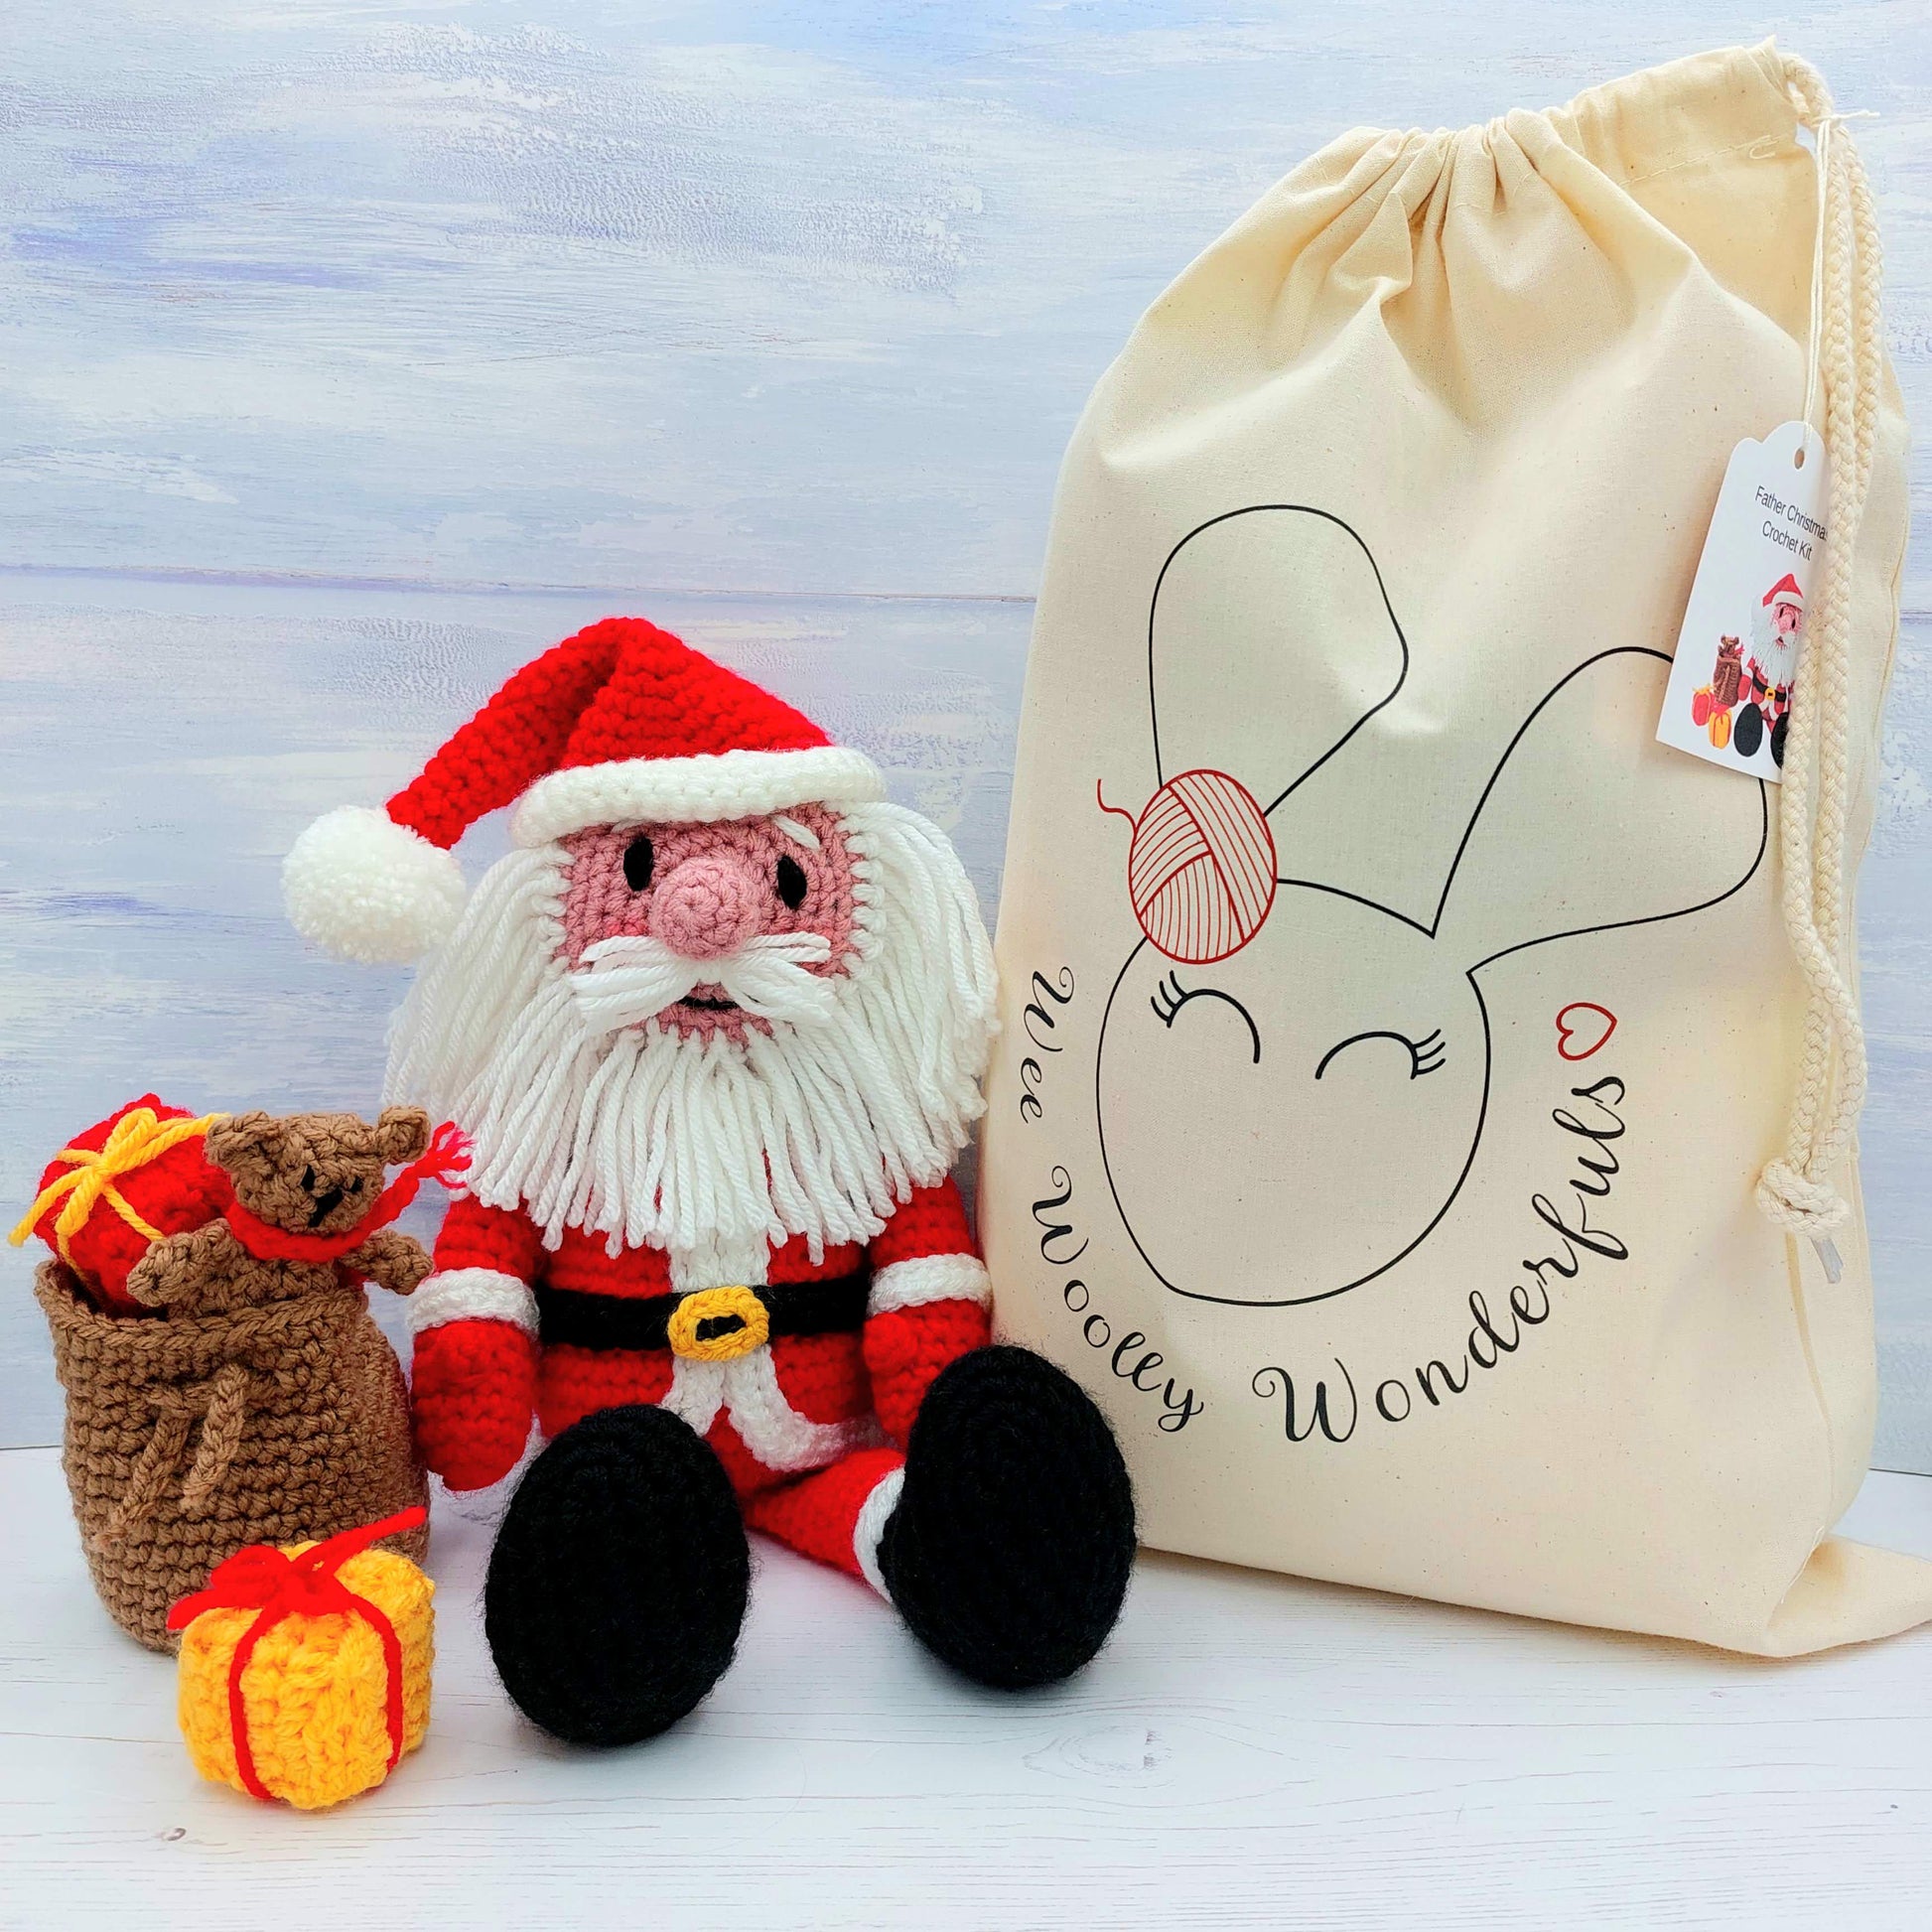 Father Christmas Crochet Kit - Santa & his sack